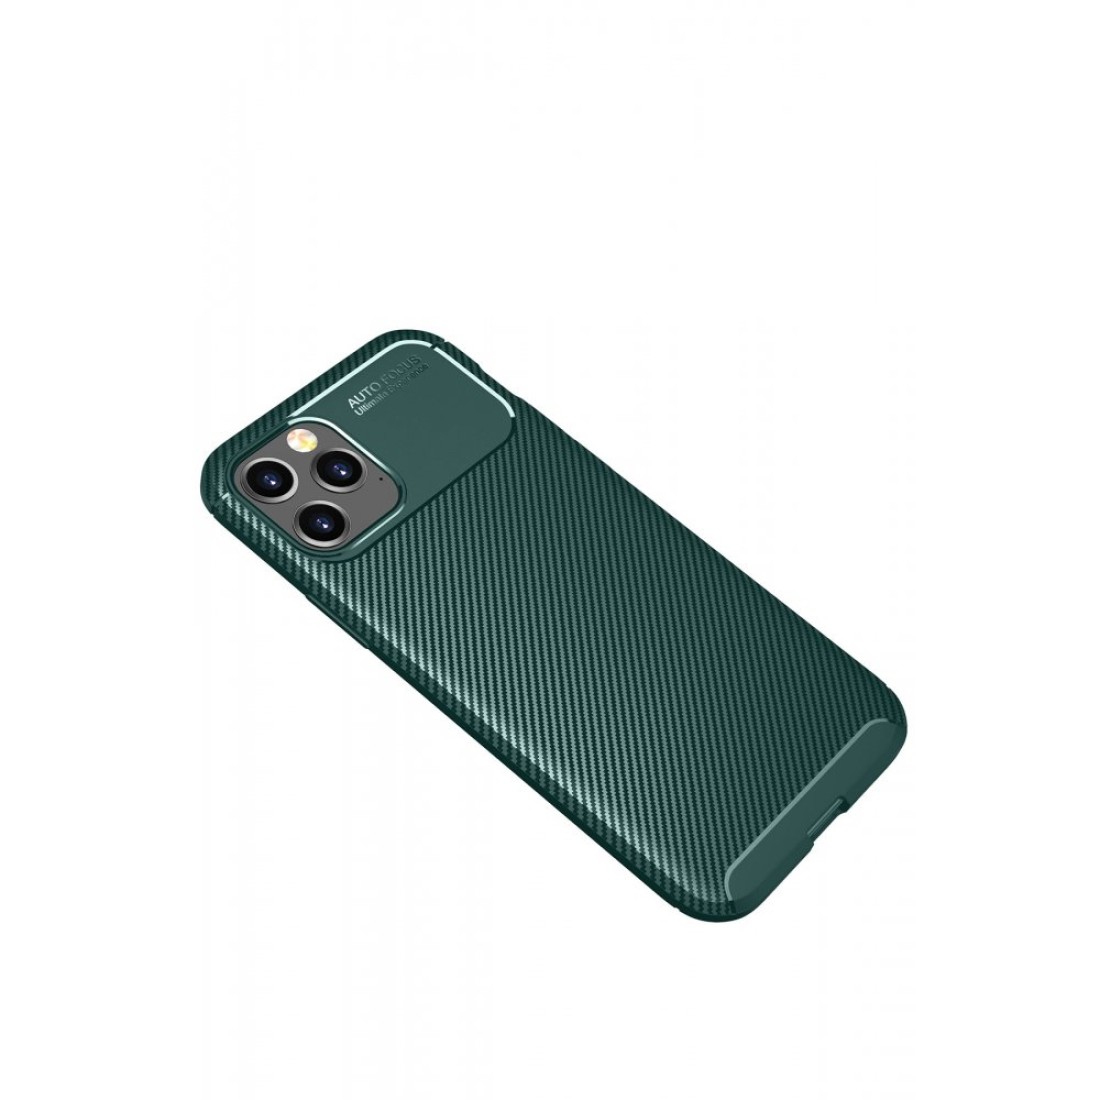 Apple iPhone 11 Pro Max Kılıf Focus Karbon Silikon - Yeşil